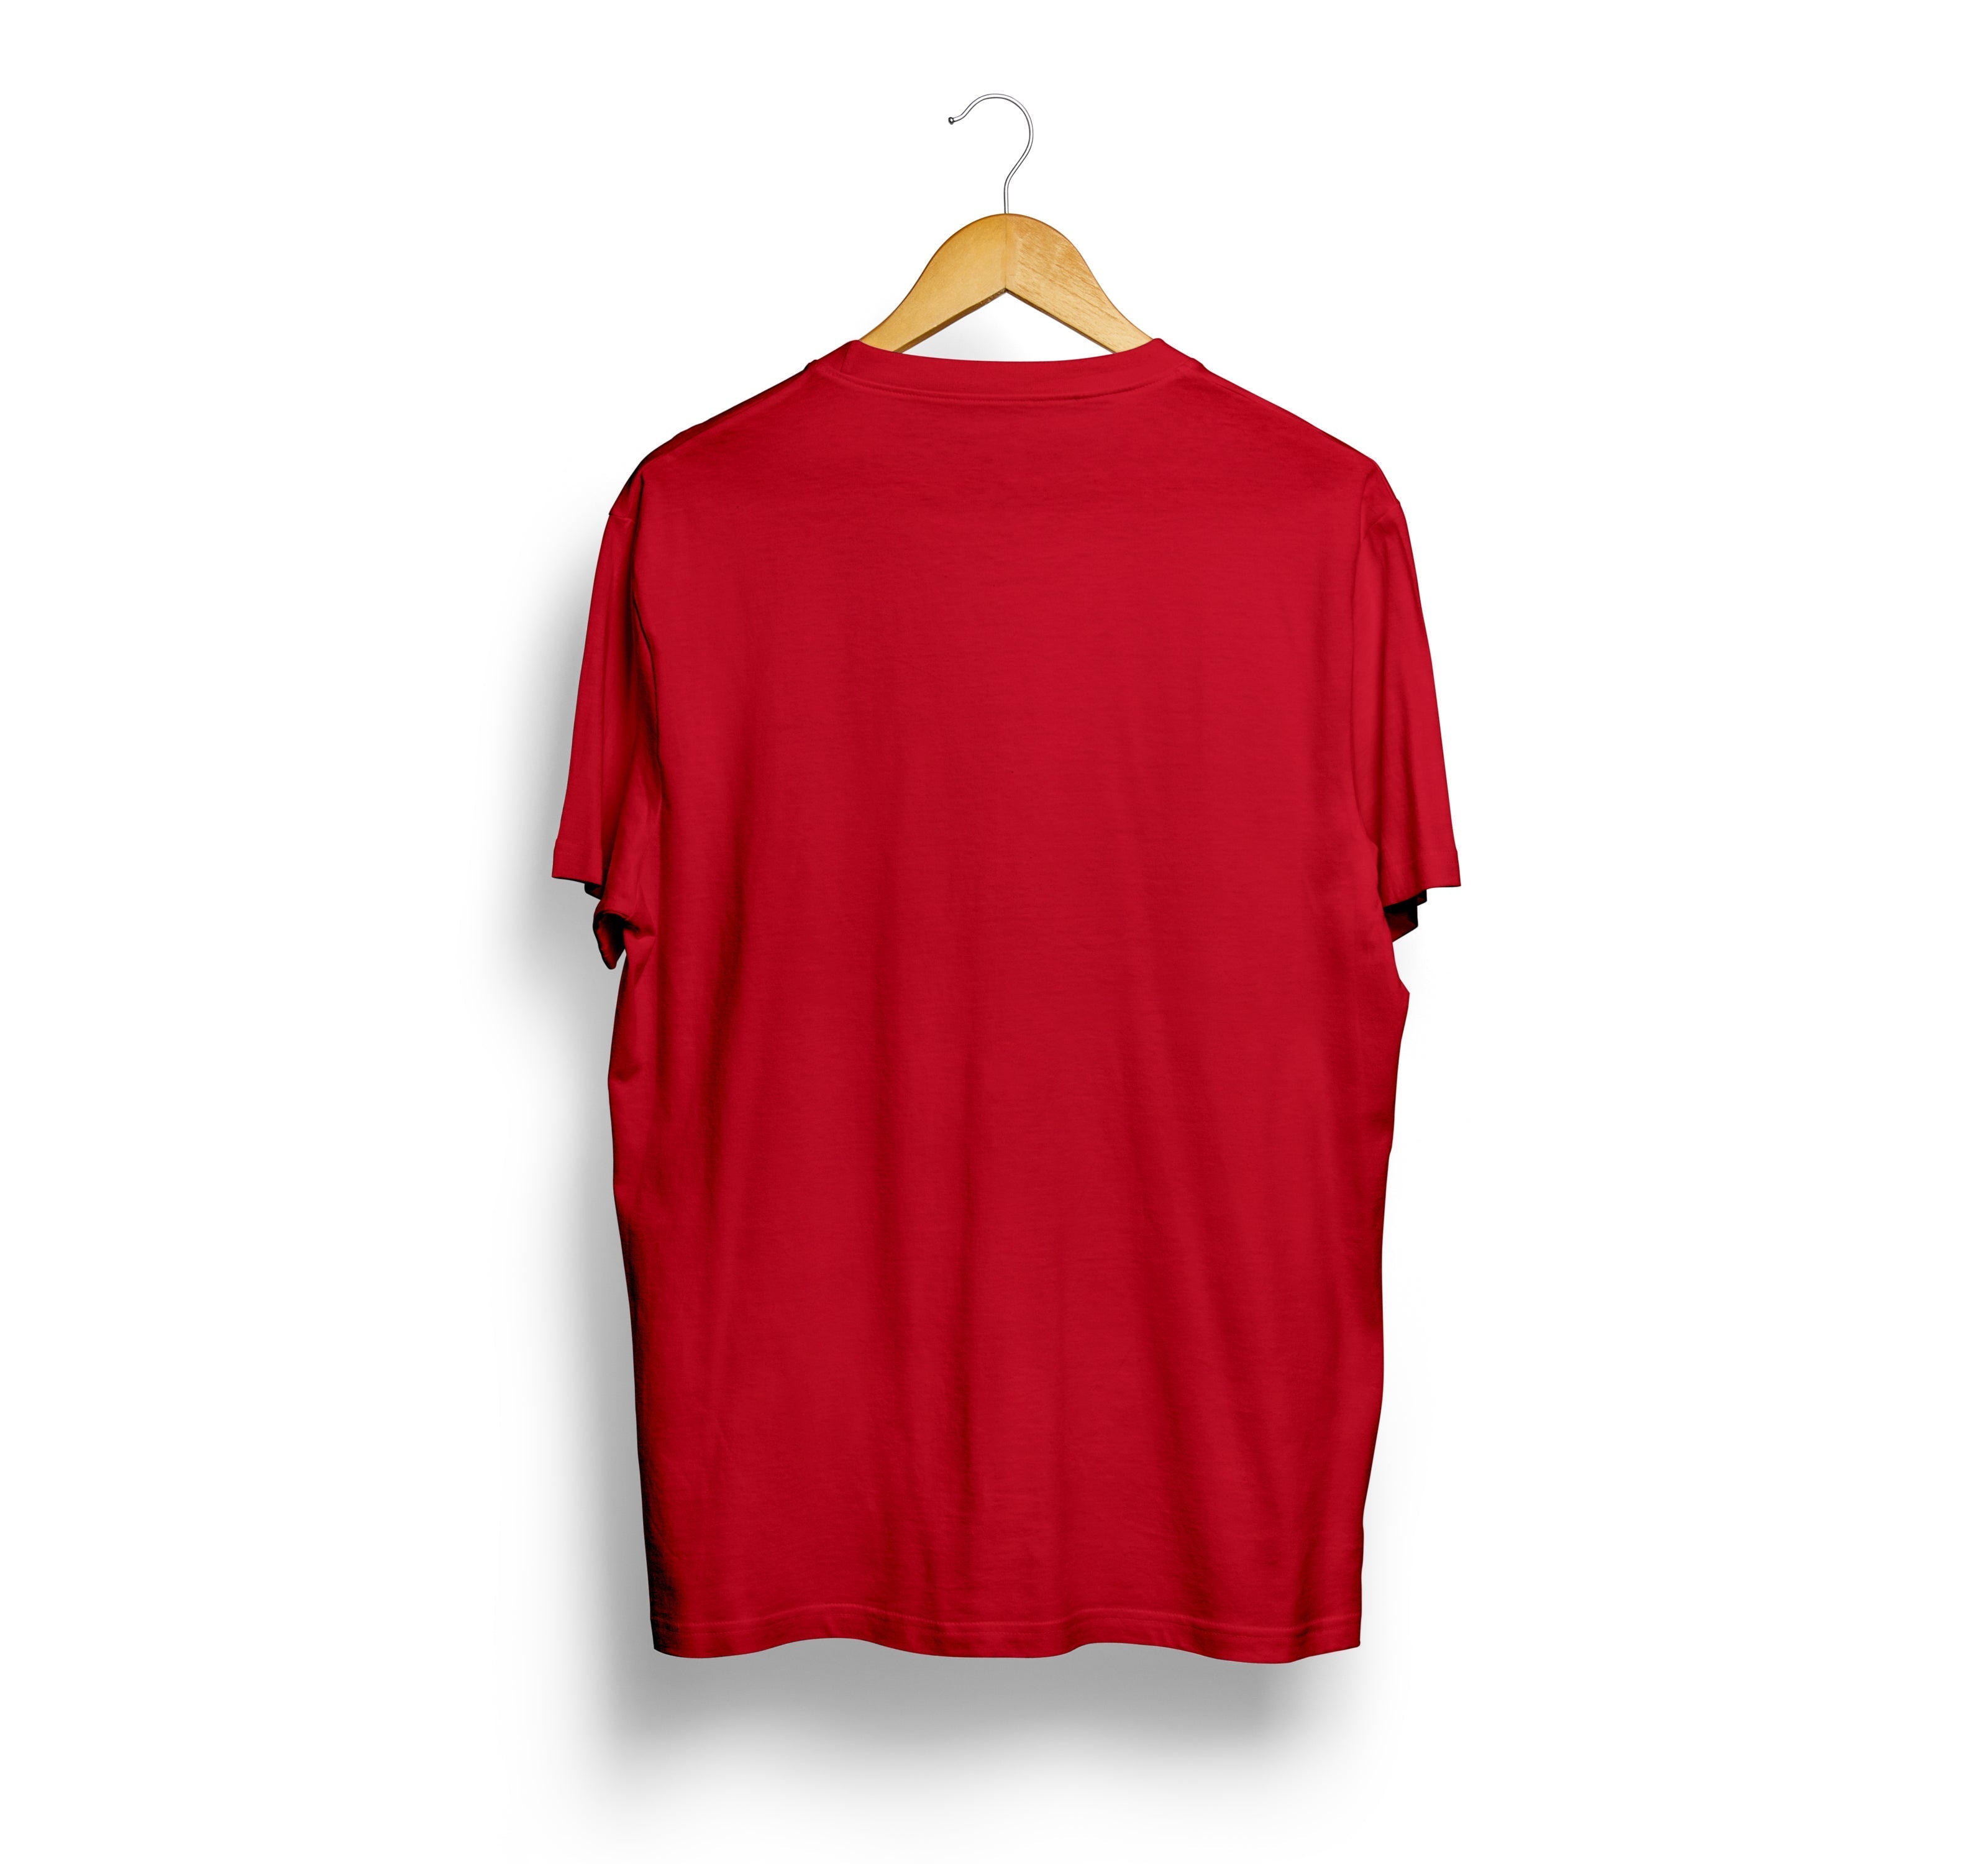 Bizzar Red T-Shirt Back